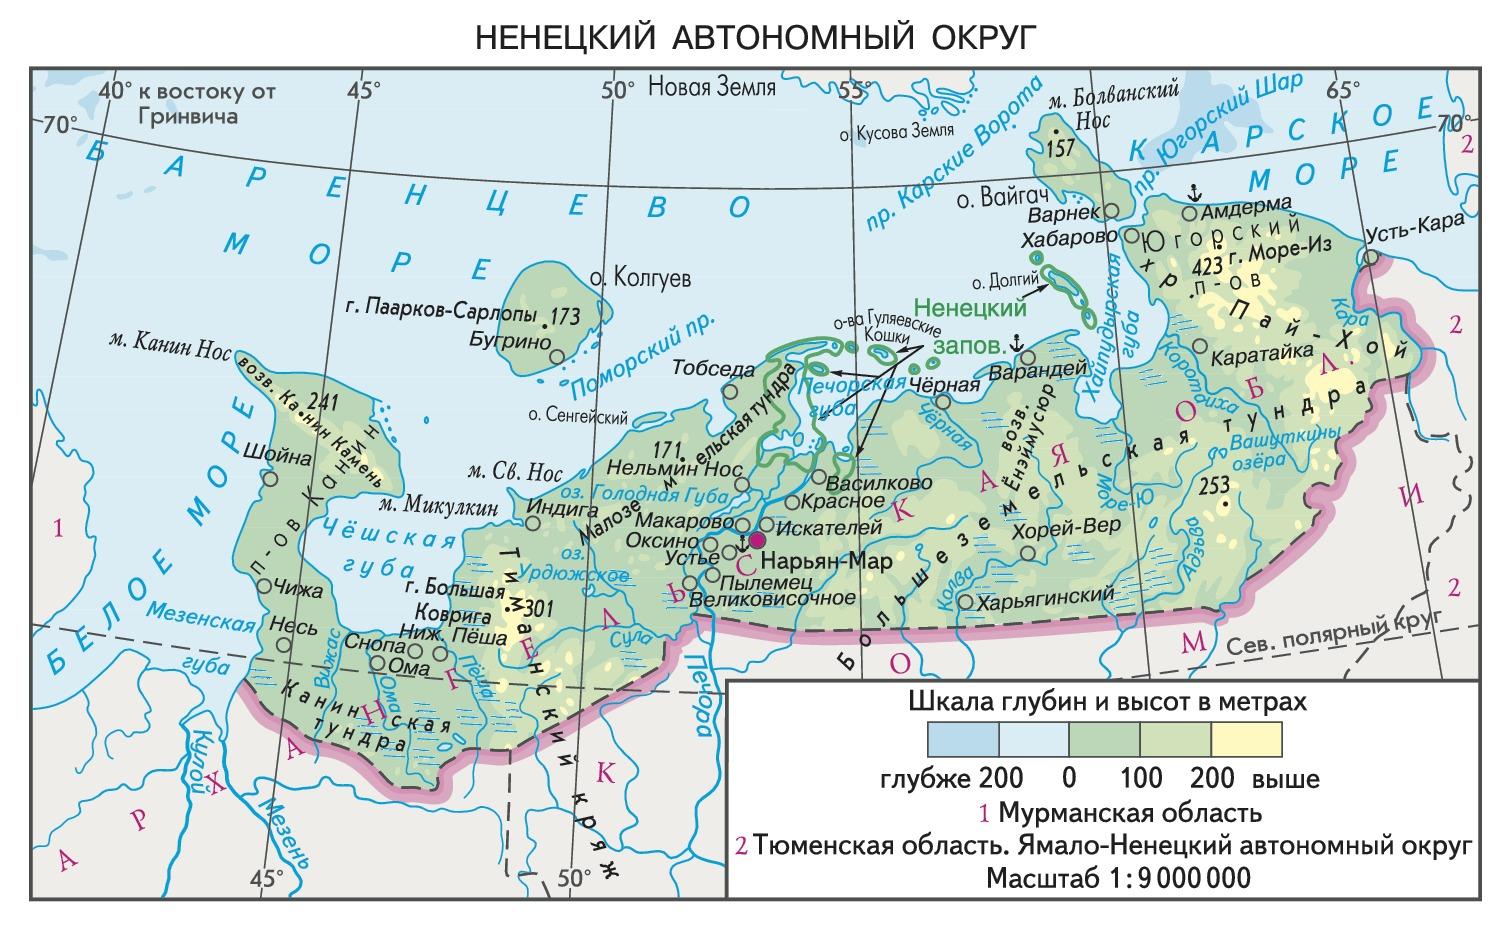 Ненцы территория проживания. Карта Ненецкого автономного округа с населенными пунктами. Ненецкий автономный округ расположен на карте. Ненецкий автономный округ расположен на территории карта. Немецкий автономный круг карта.